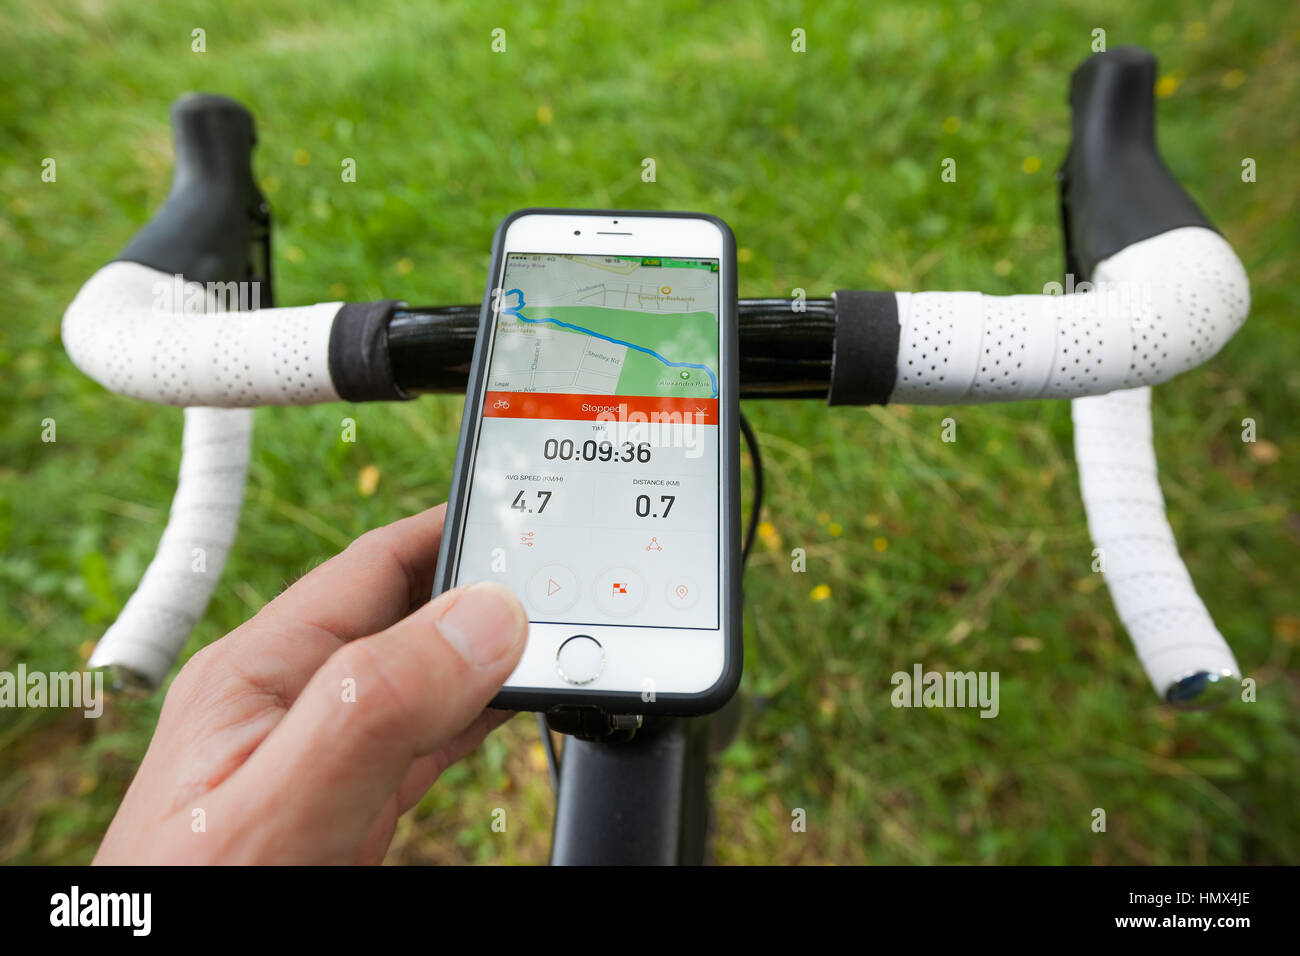 BATH, Reino Unido - 1 de septiembre de 2015 : Cerca de un smartphone montado en el manillar de una bicicleta de carretera en un parque. El teléfono está mostrando la app, Strava Foto de stock